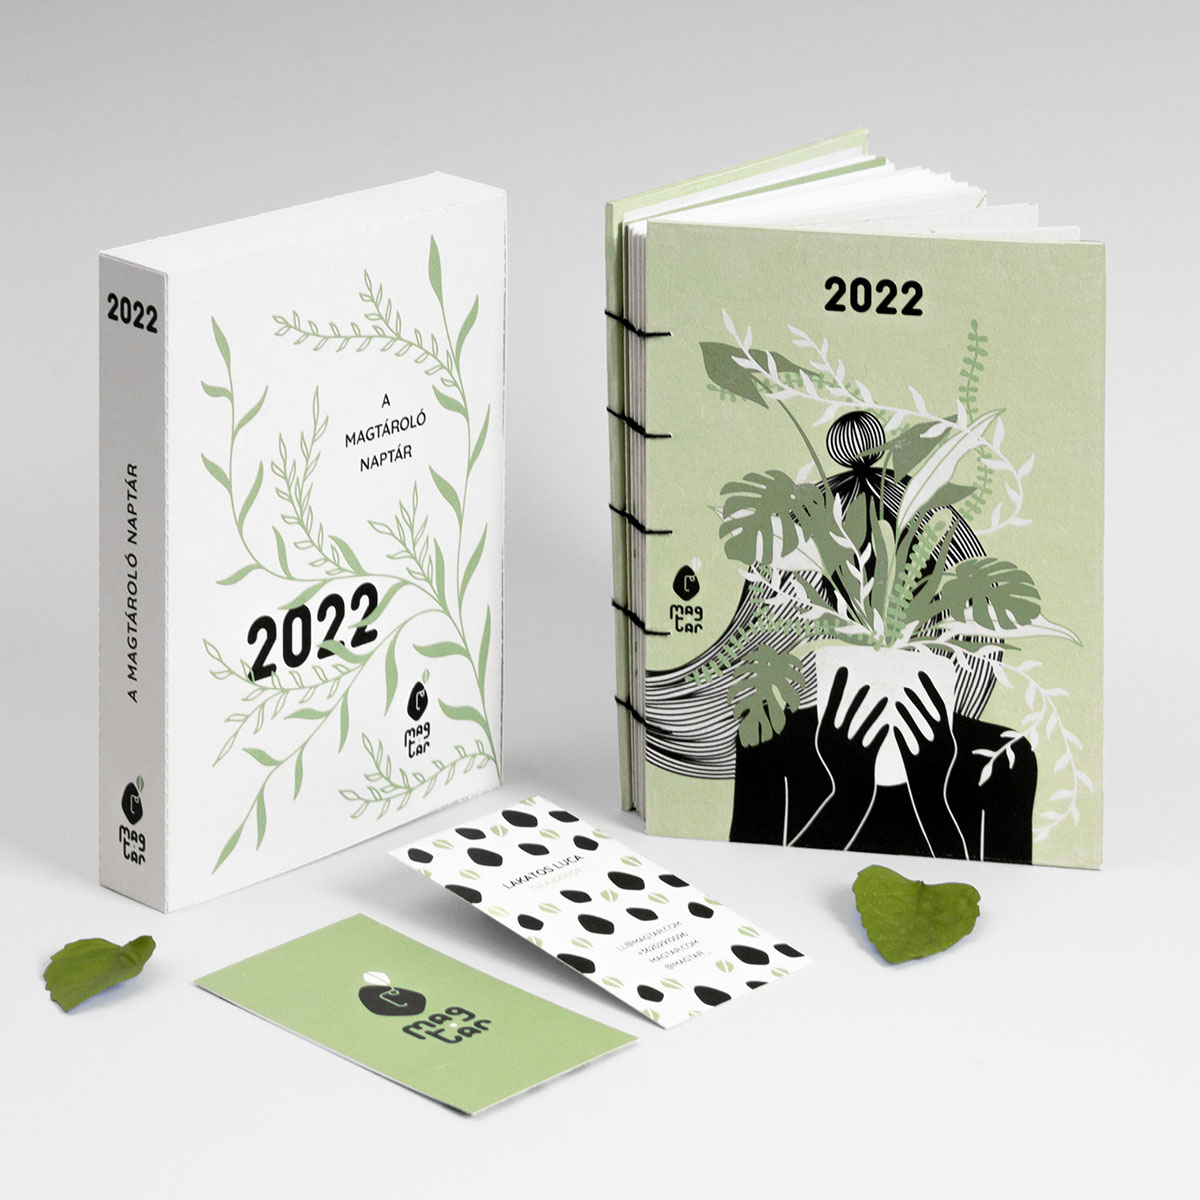 2022礼品笔记本包装设计,礼品笔记本设计公司